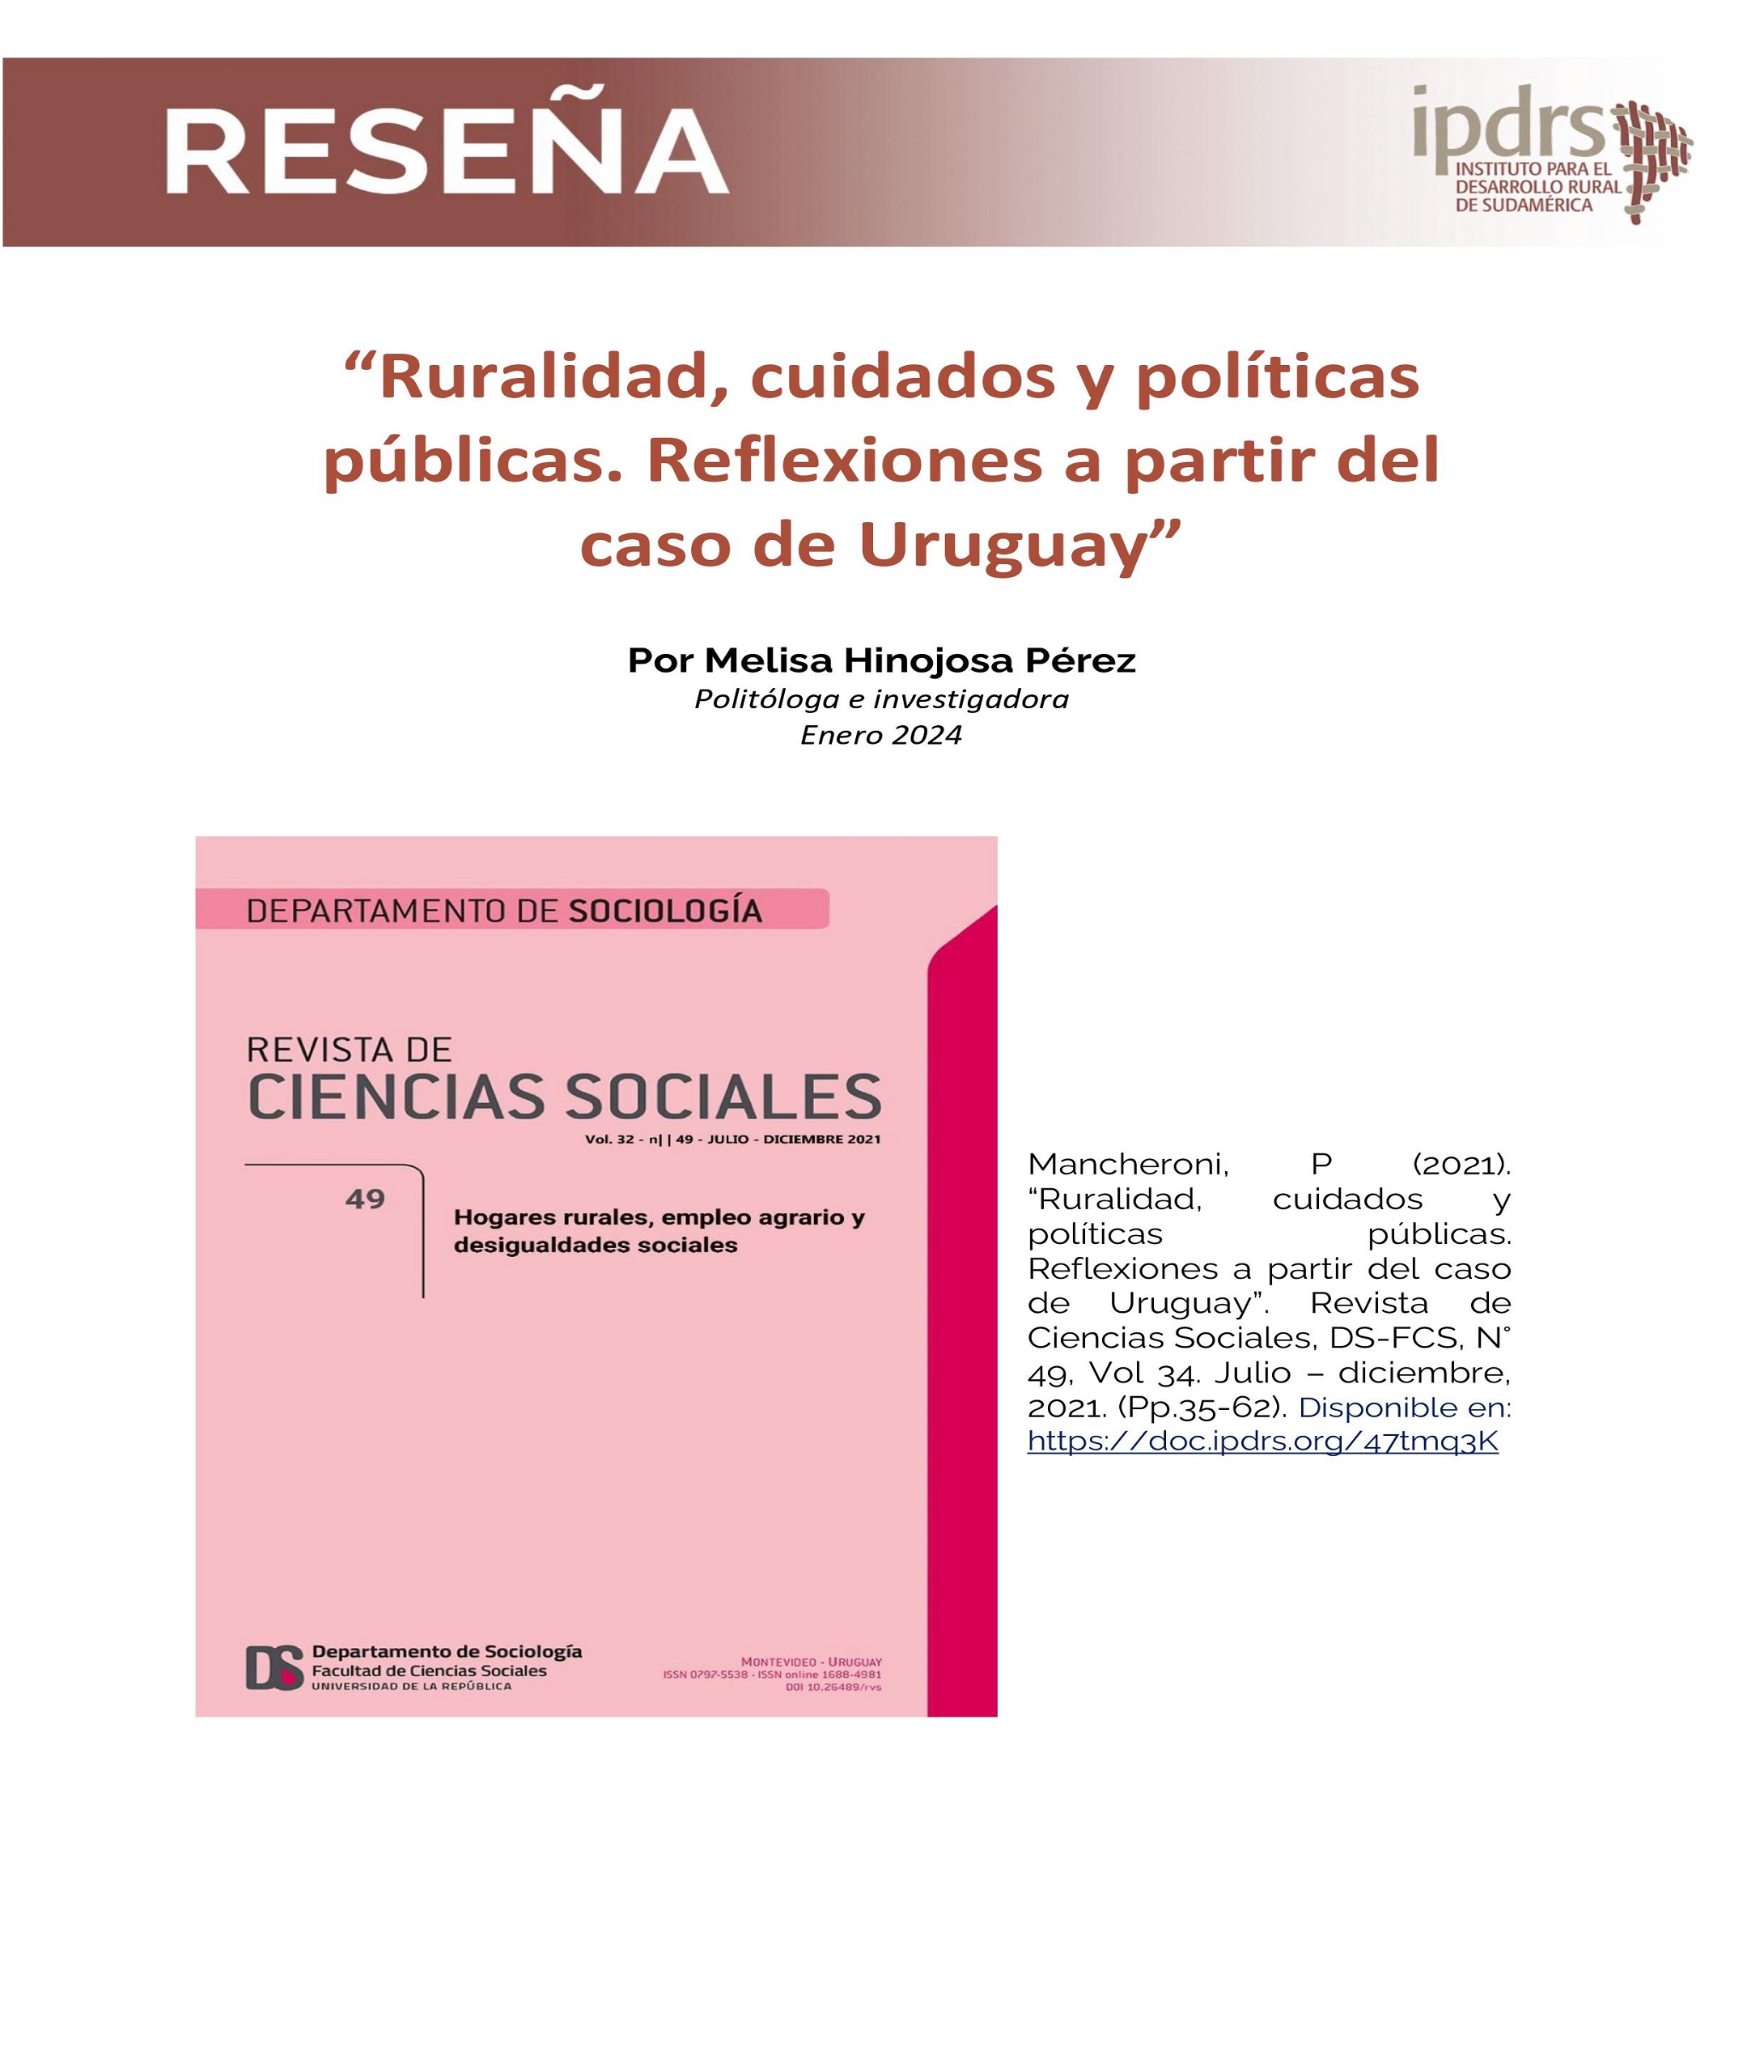 Reseña: “Ruralidad, cuidados y políticas públicas. Reflexiones a partir del caso de Uruguay”